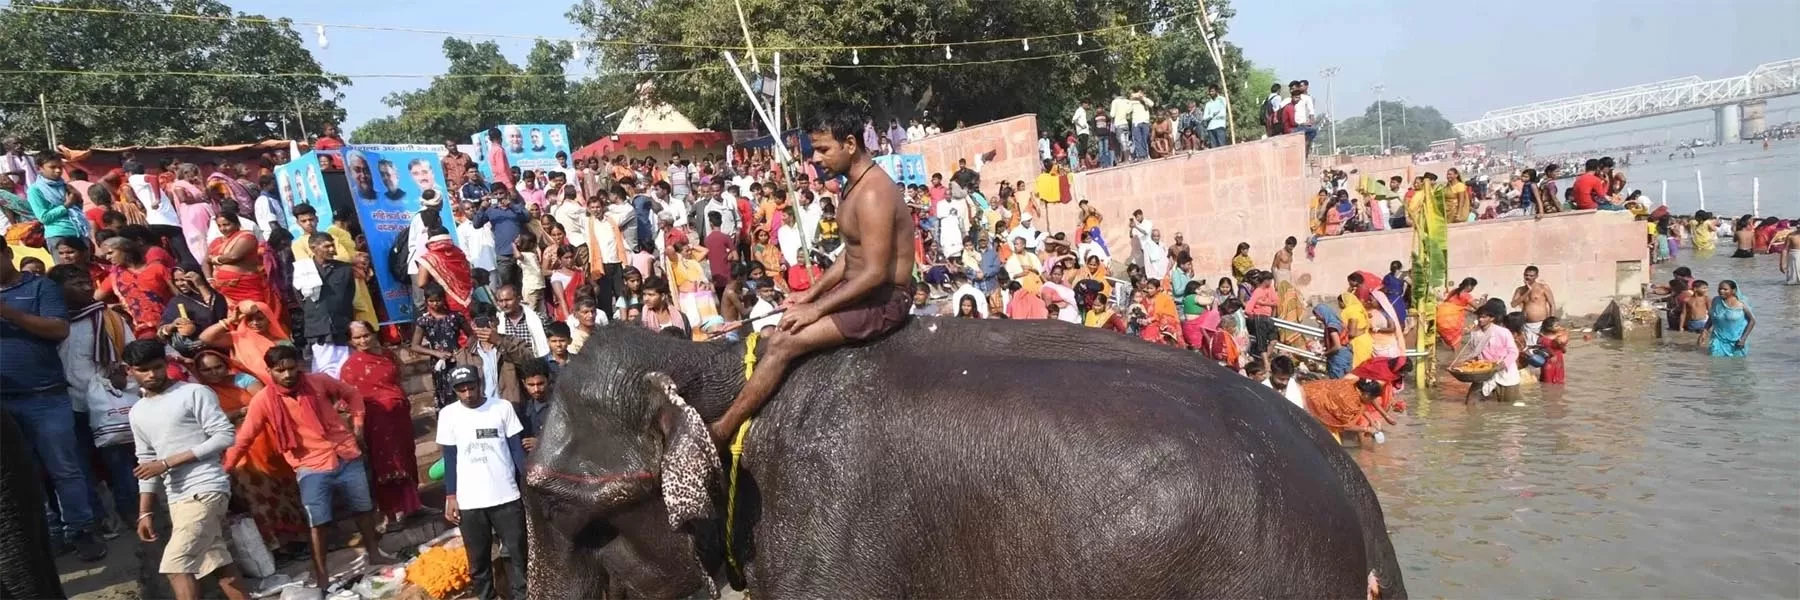 Sonepur cattle fair